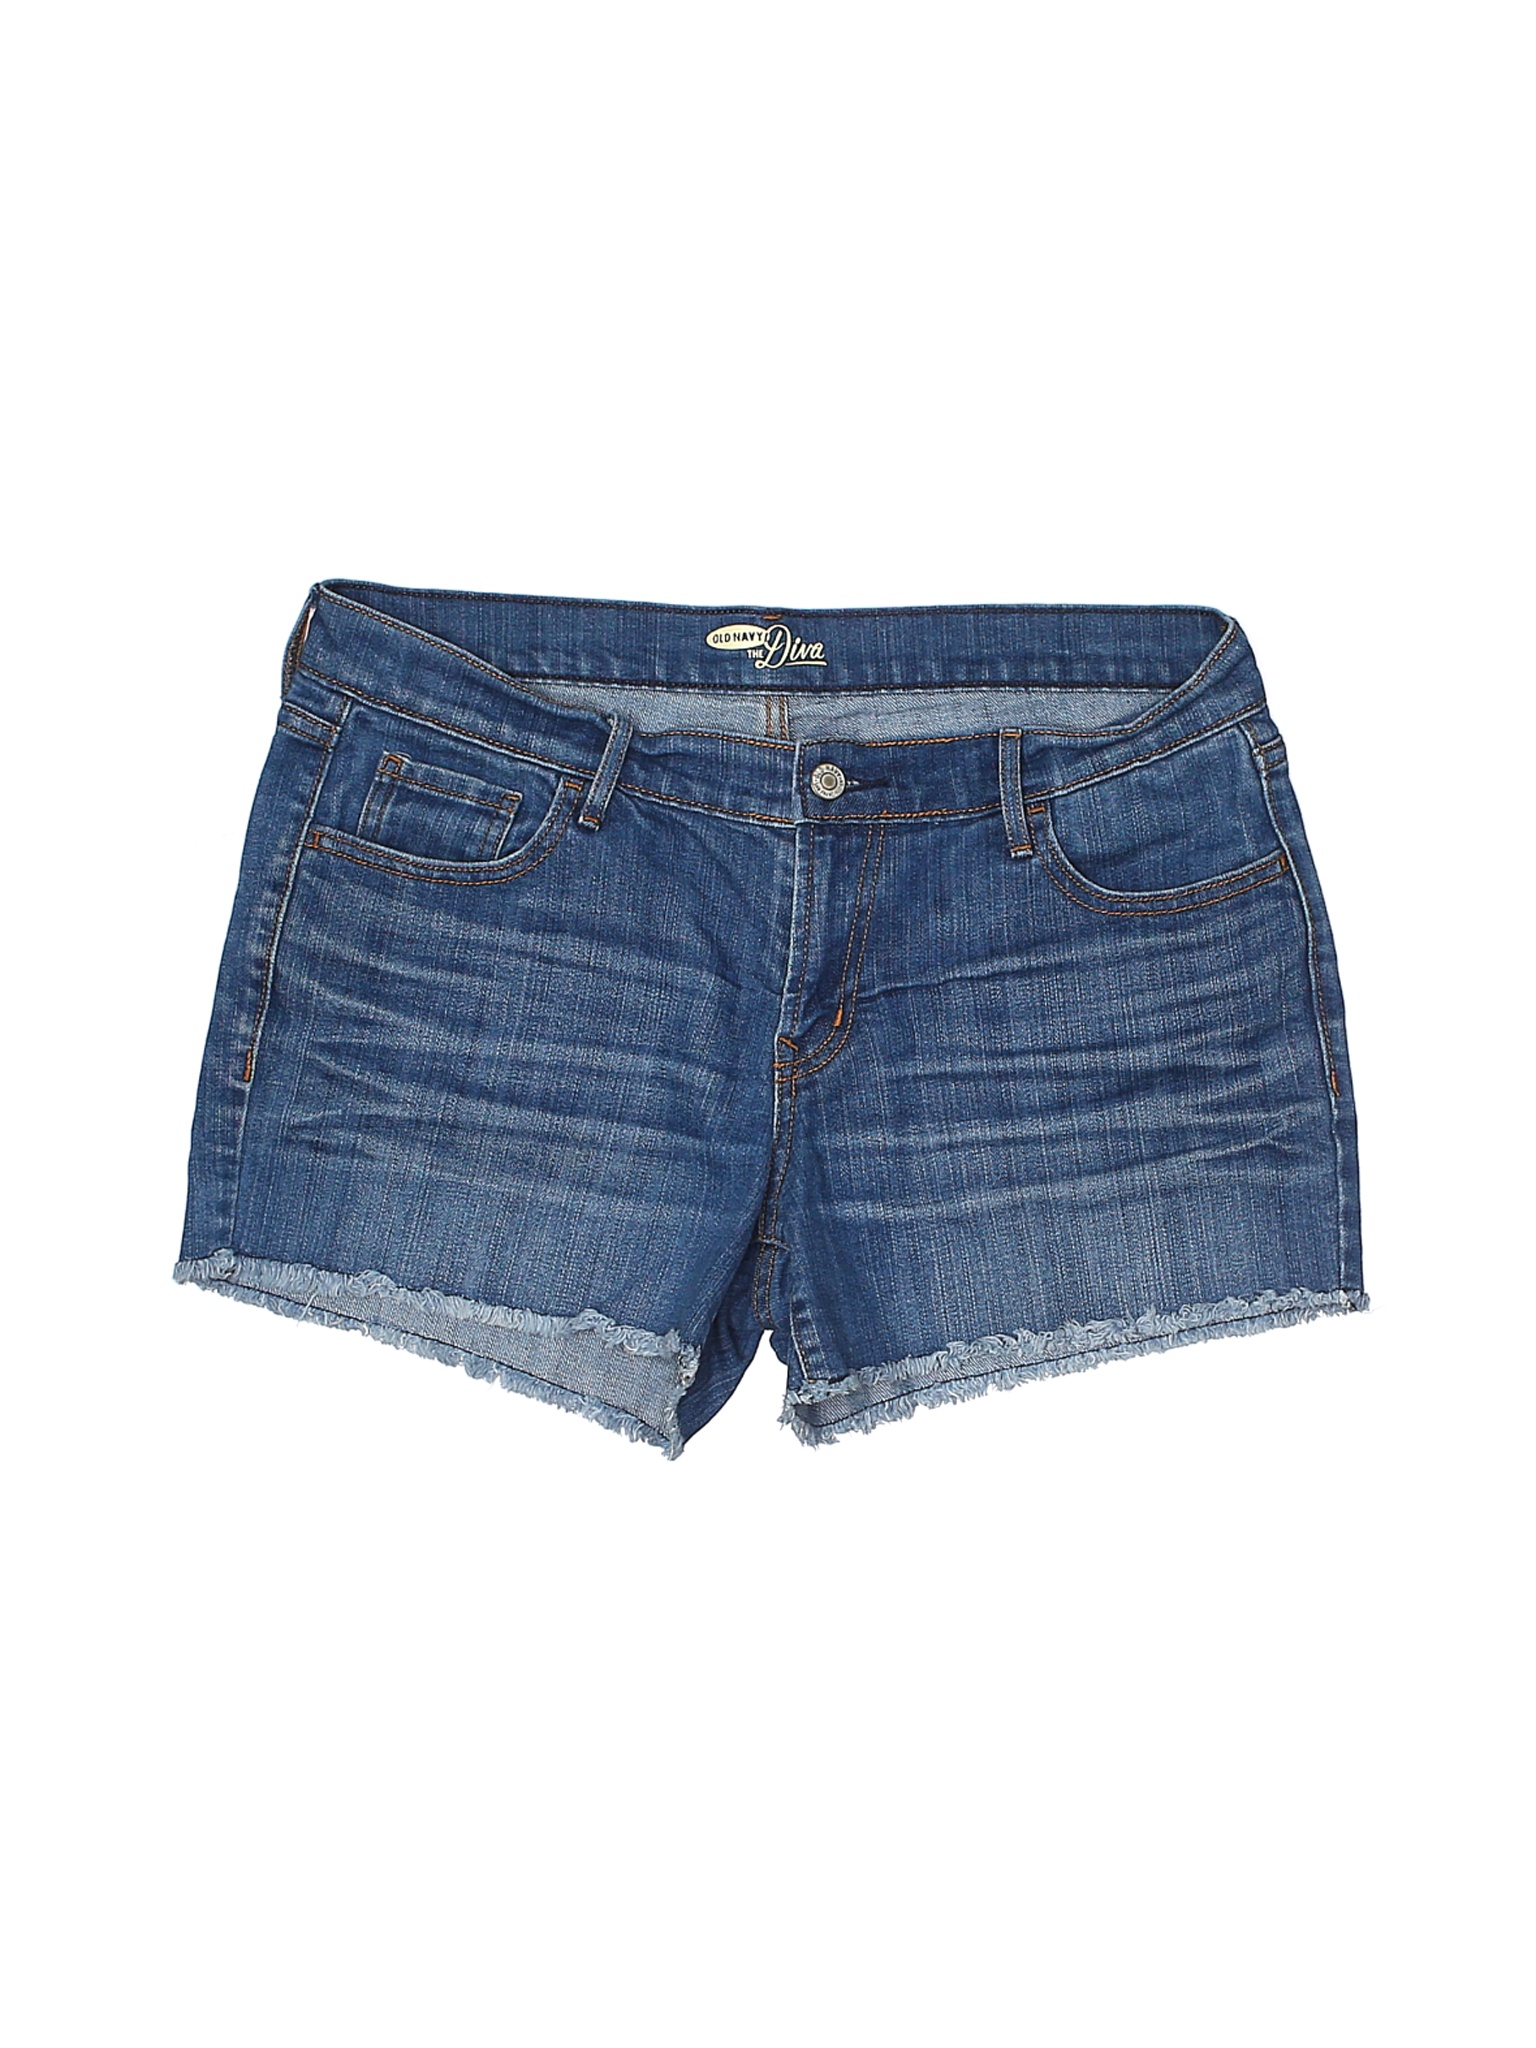 Old Navy Women Blue Denim Shorts 10 | eBay